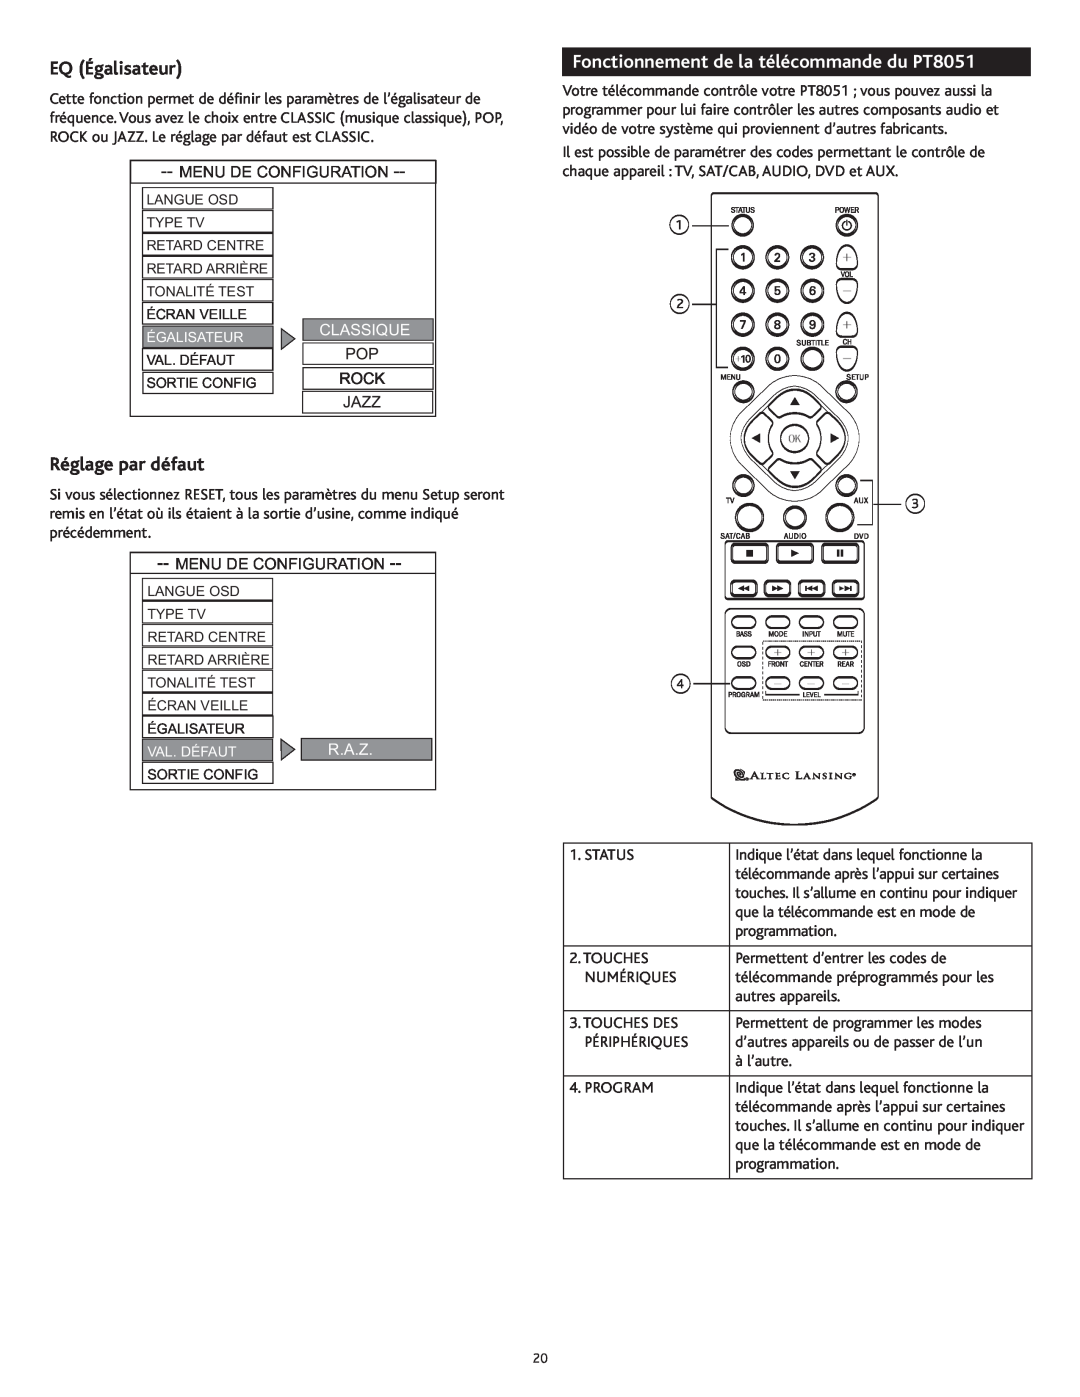 Altec Lansing manual EQ Égalisateur, Réglage par défaut, Fonctionnement de la télécommande du PT8051, Classique, R.A.Z 